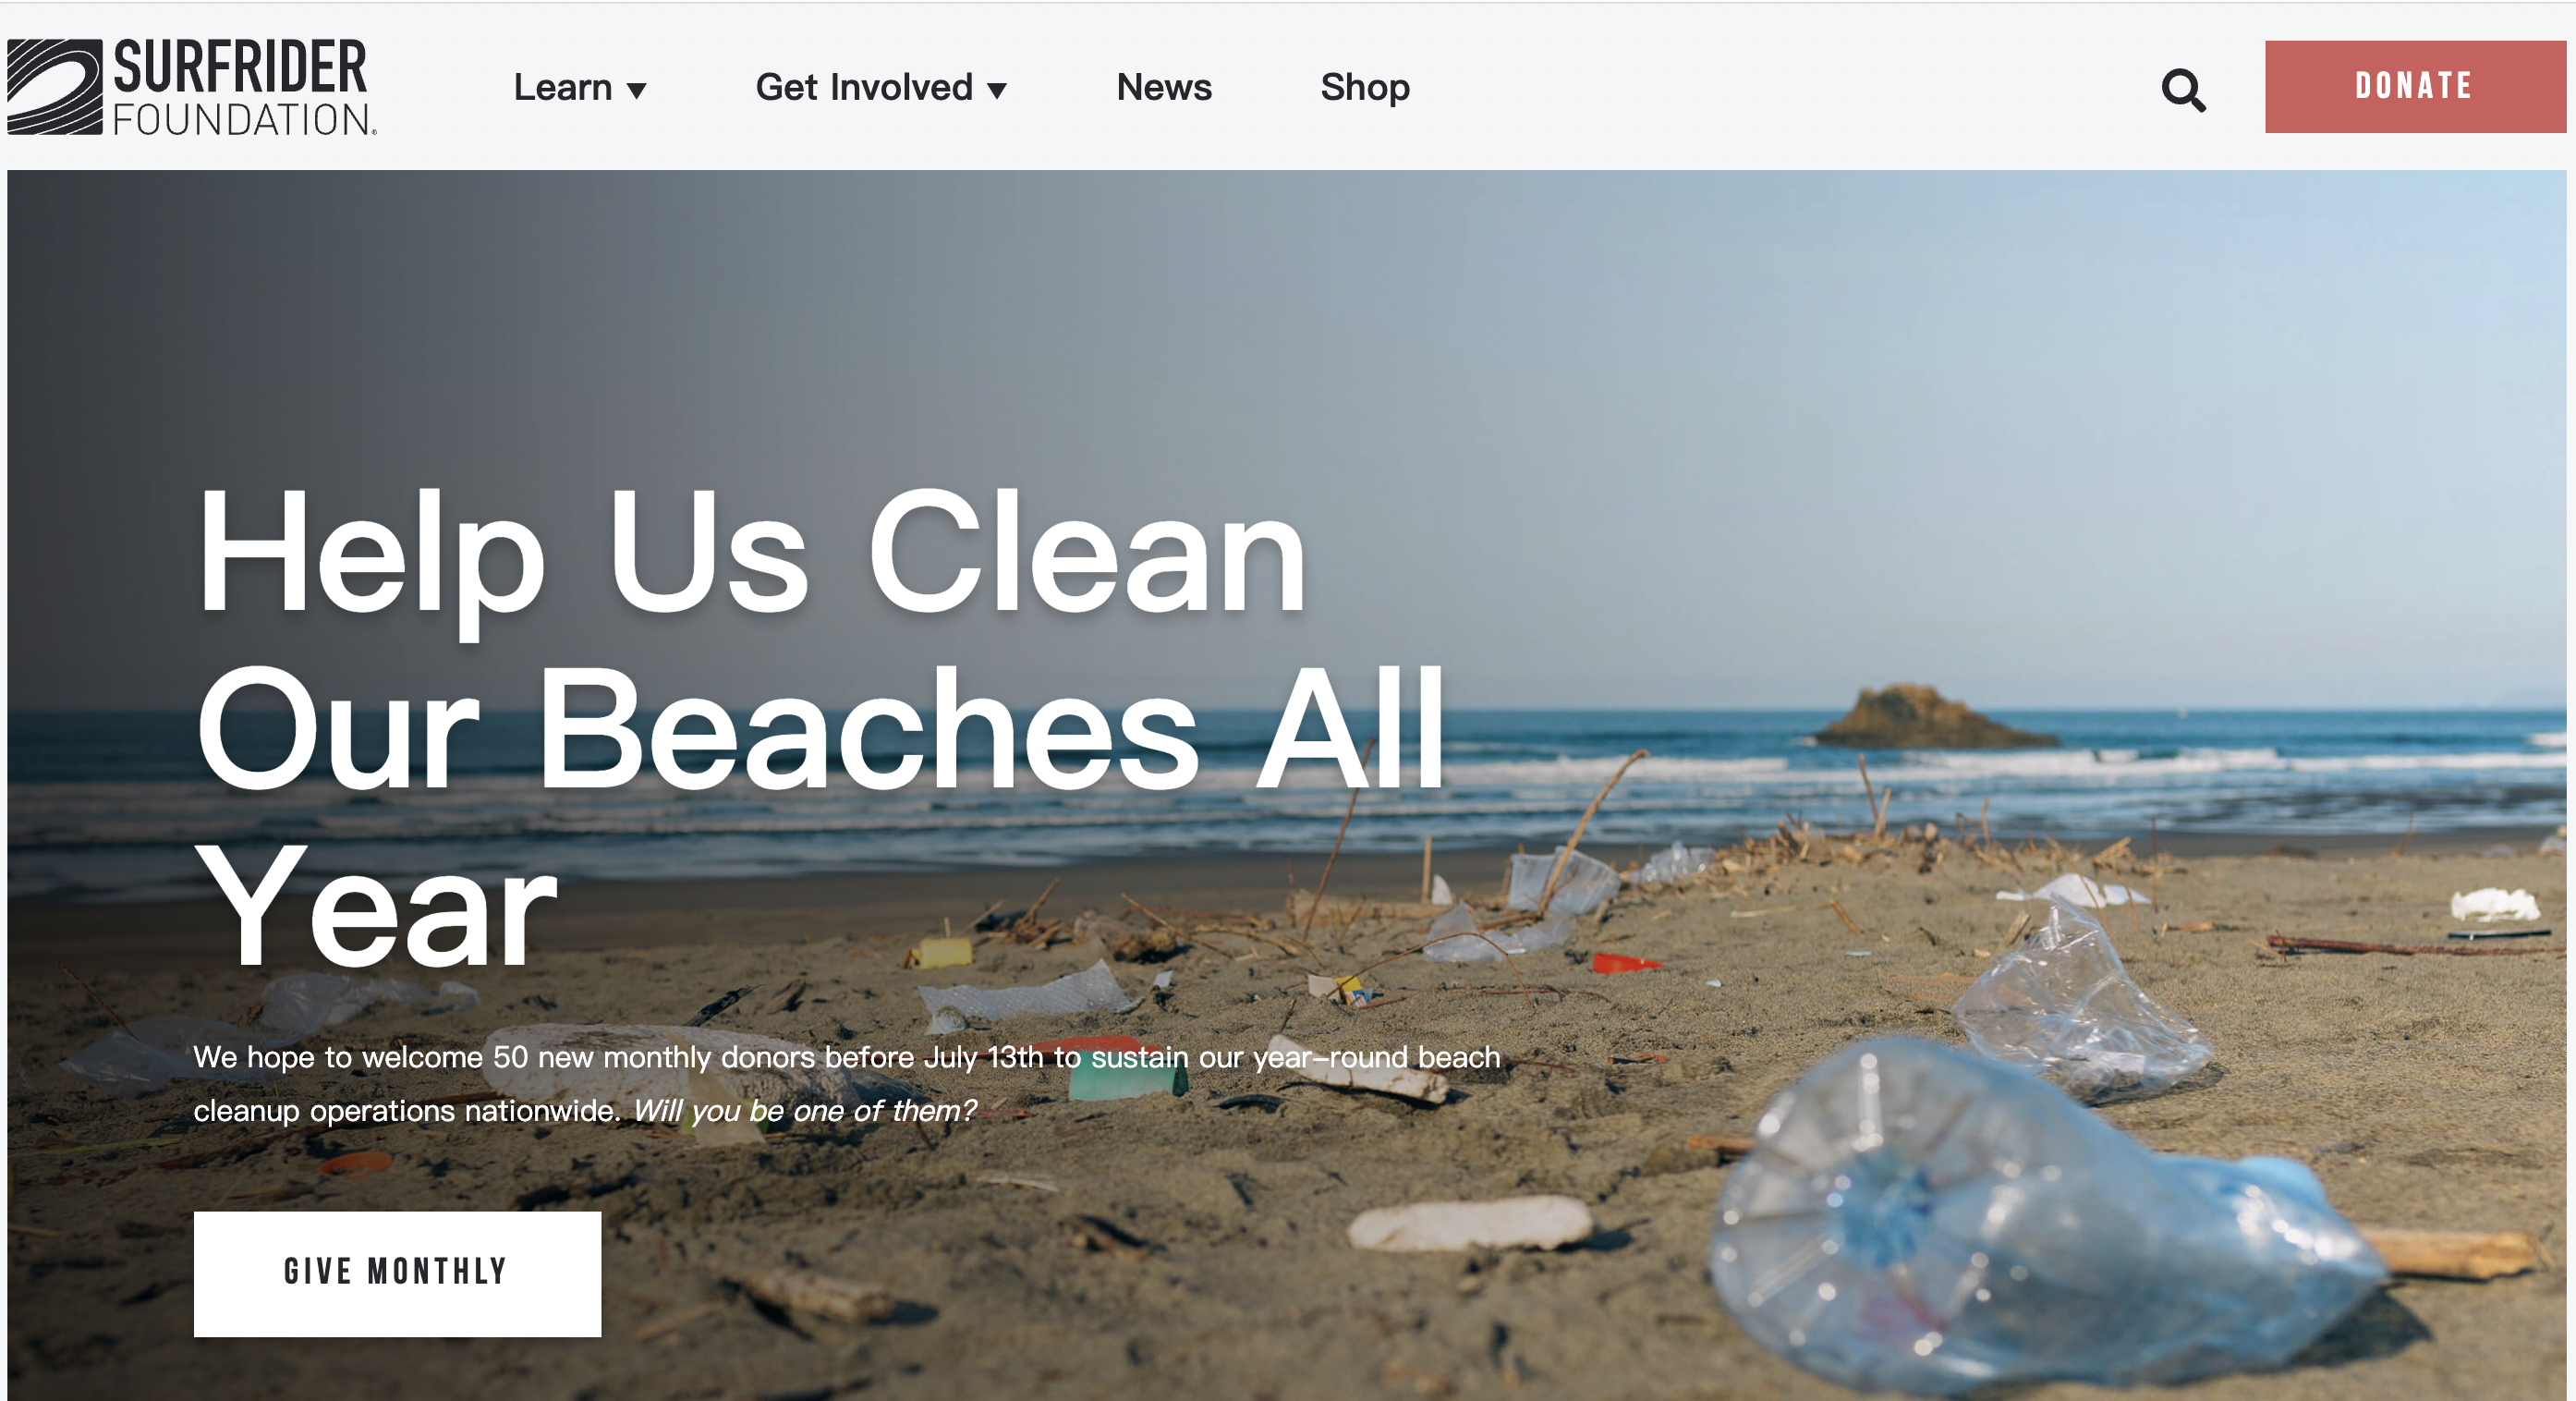 国际冲浪基金会：品牌商对塑料污染采取了“错误的解决方案”